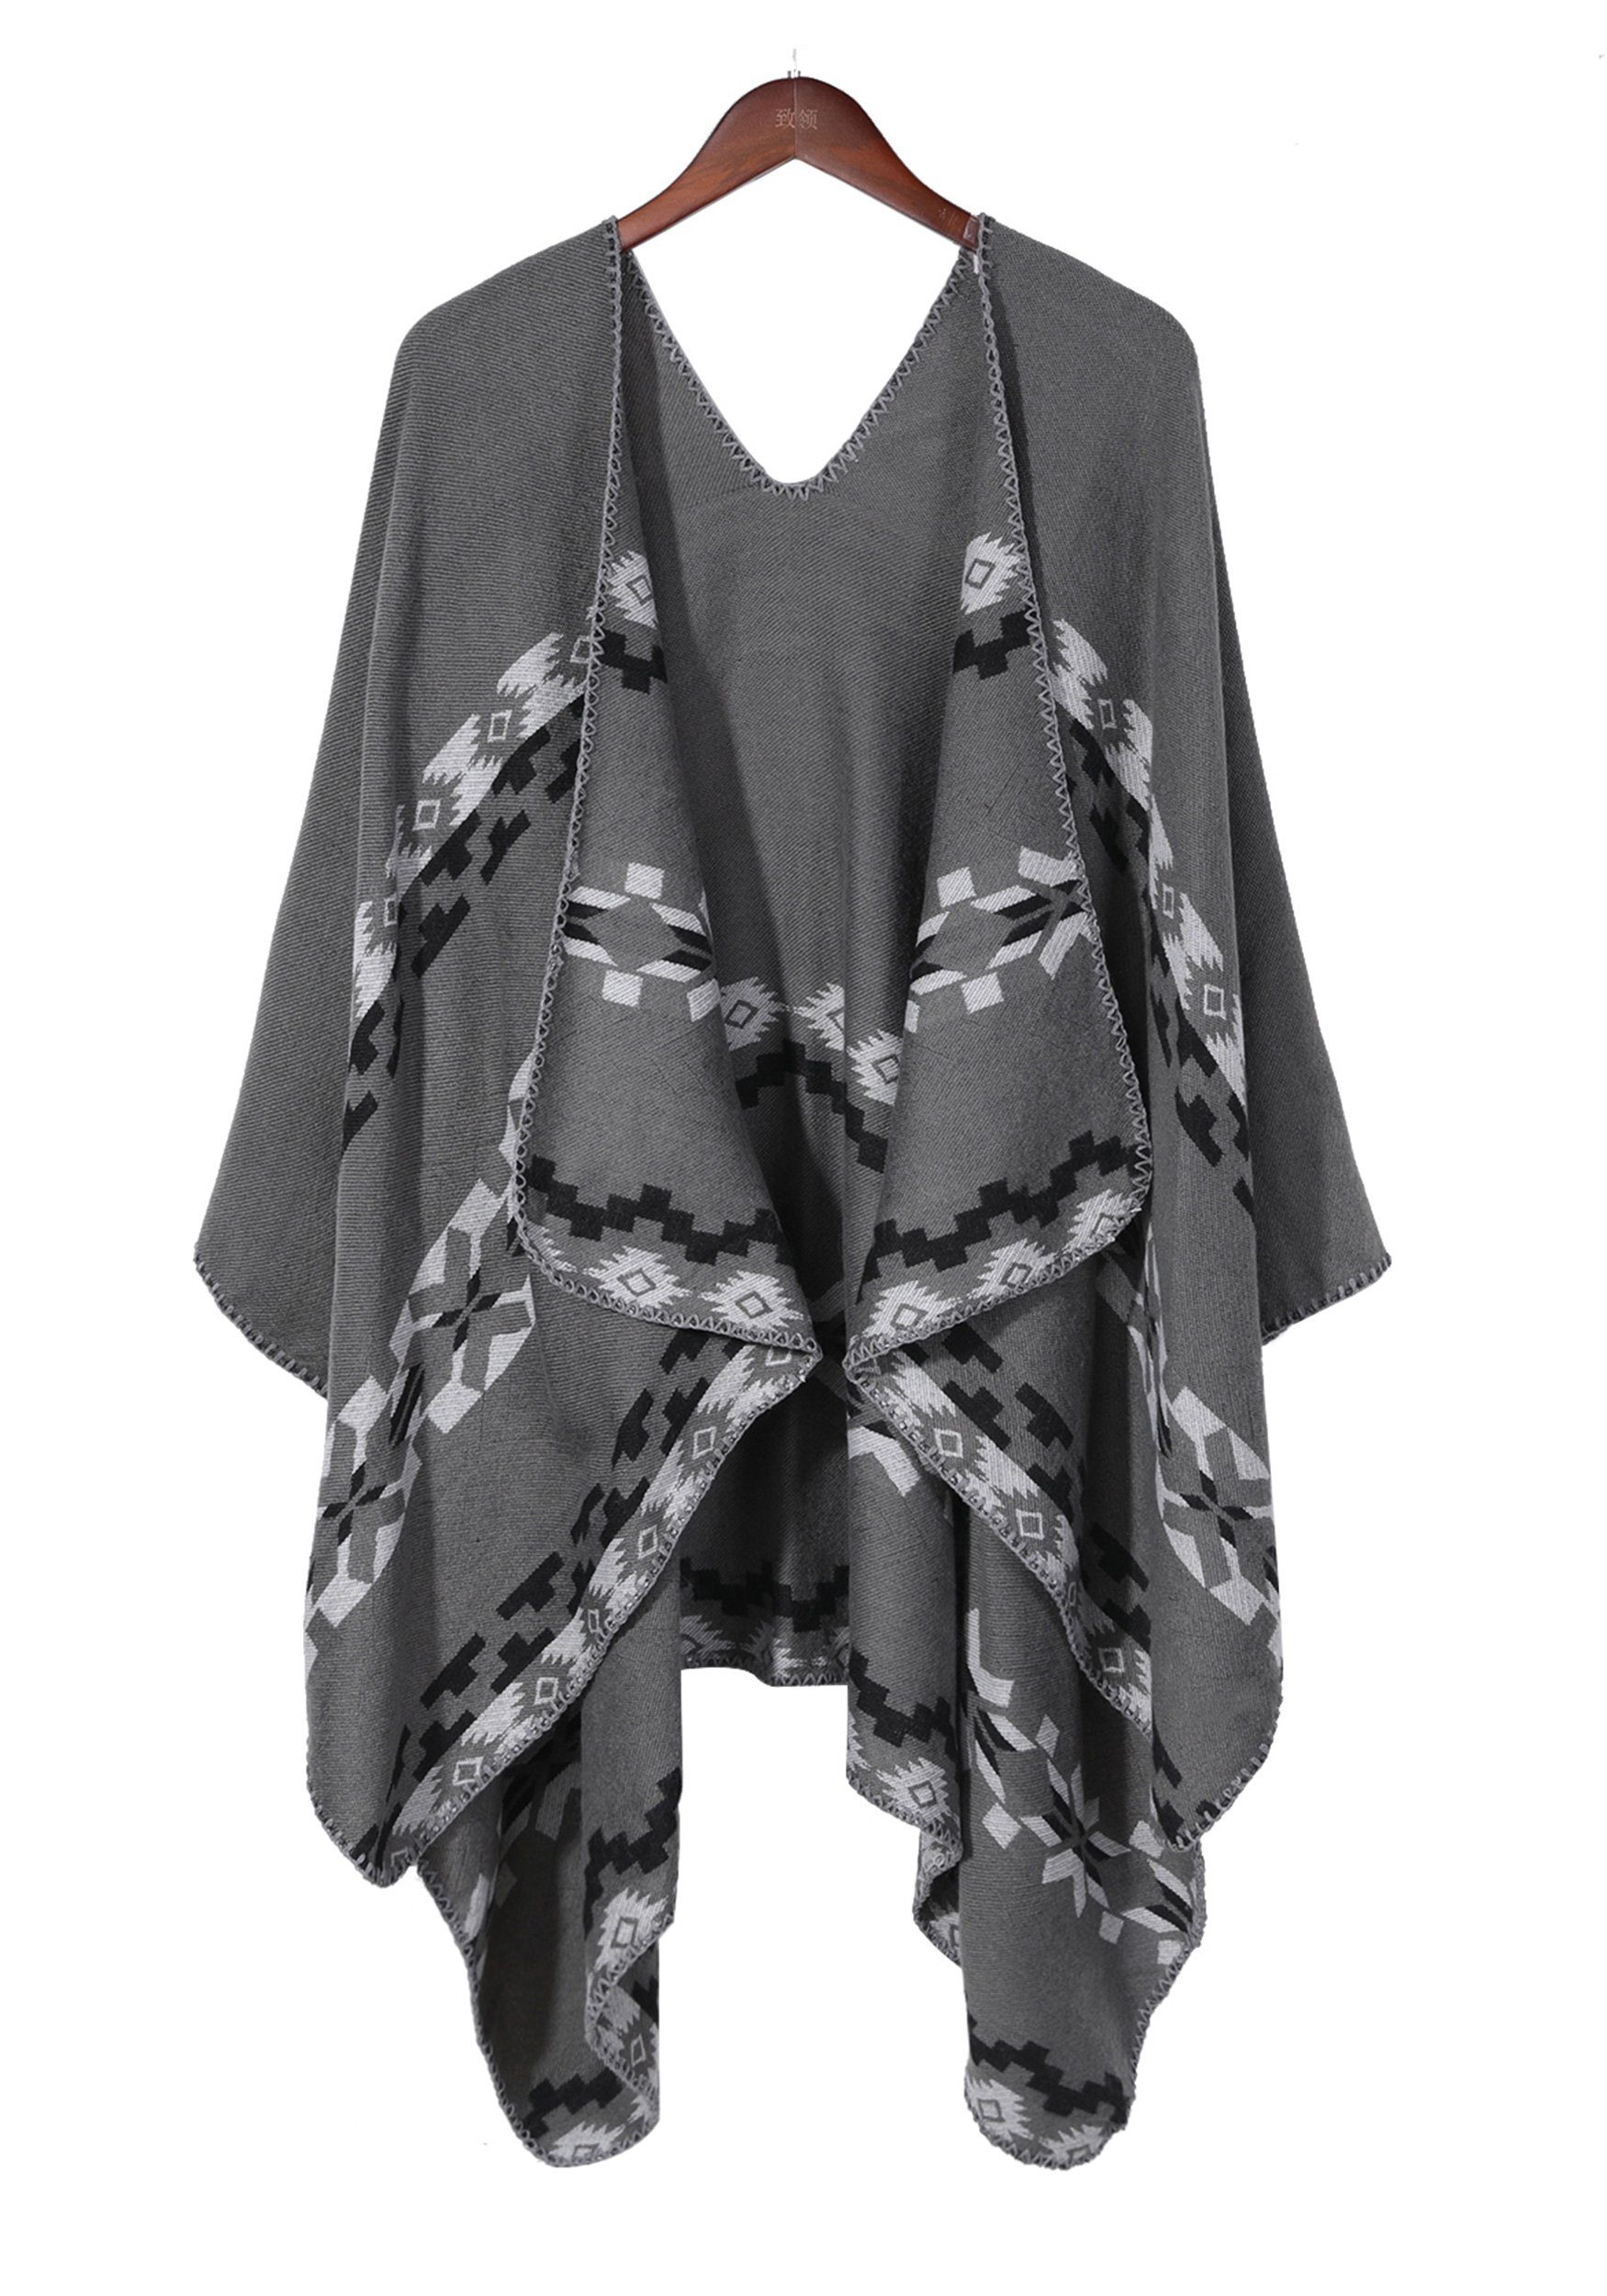 MAGICSHE Regenponcho Damen Retro Argyle-Muster Open Front Schal Umkenrbares Design mit print,elegant und stilvoll grau